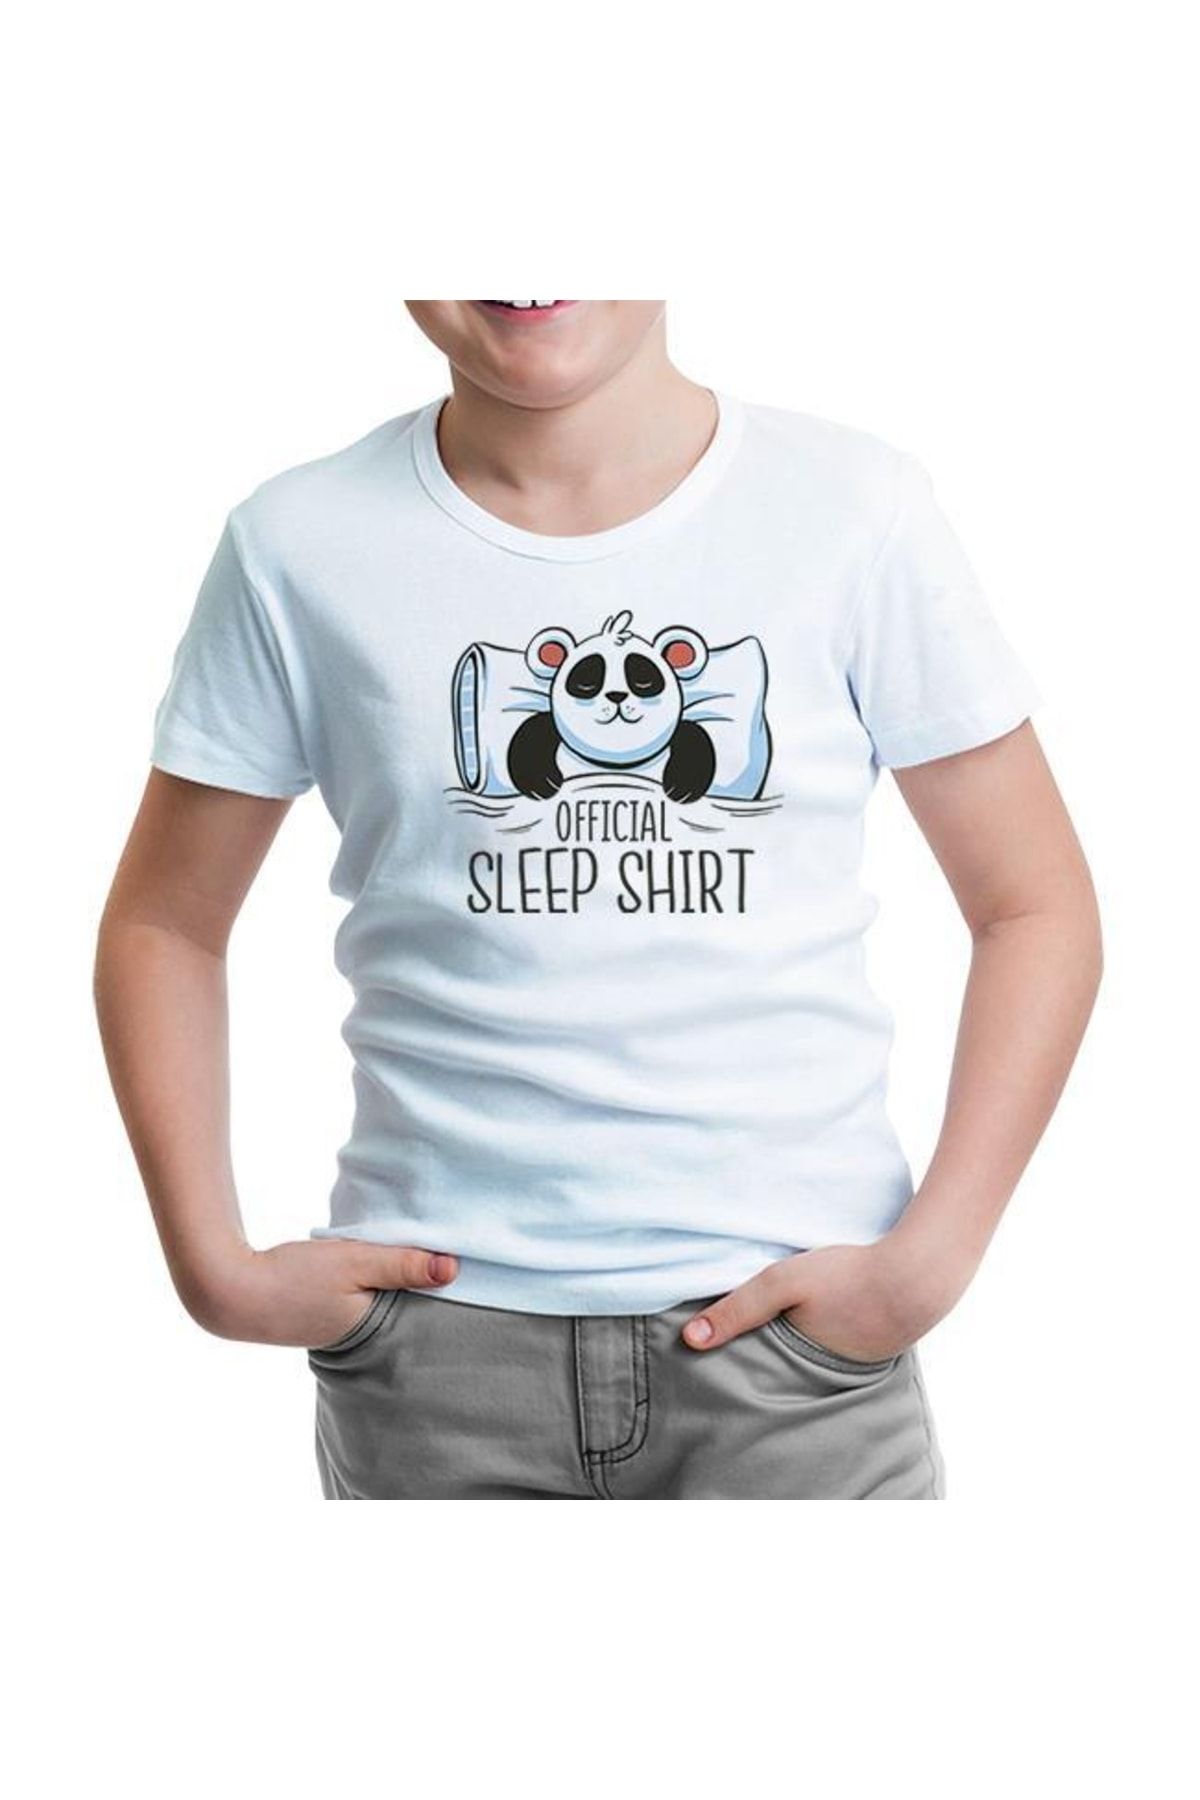 Lord T-Shirt Official Sleep Tshirt Panda Sleeping Beyaz Çocuk Tshirt